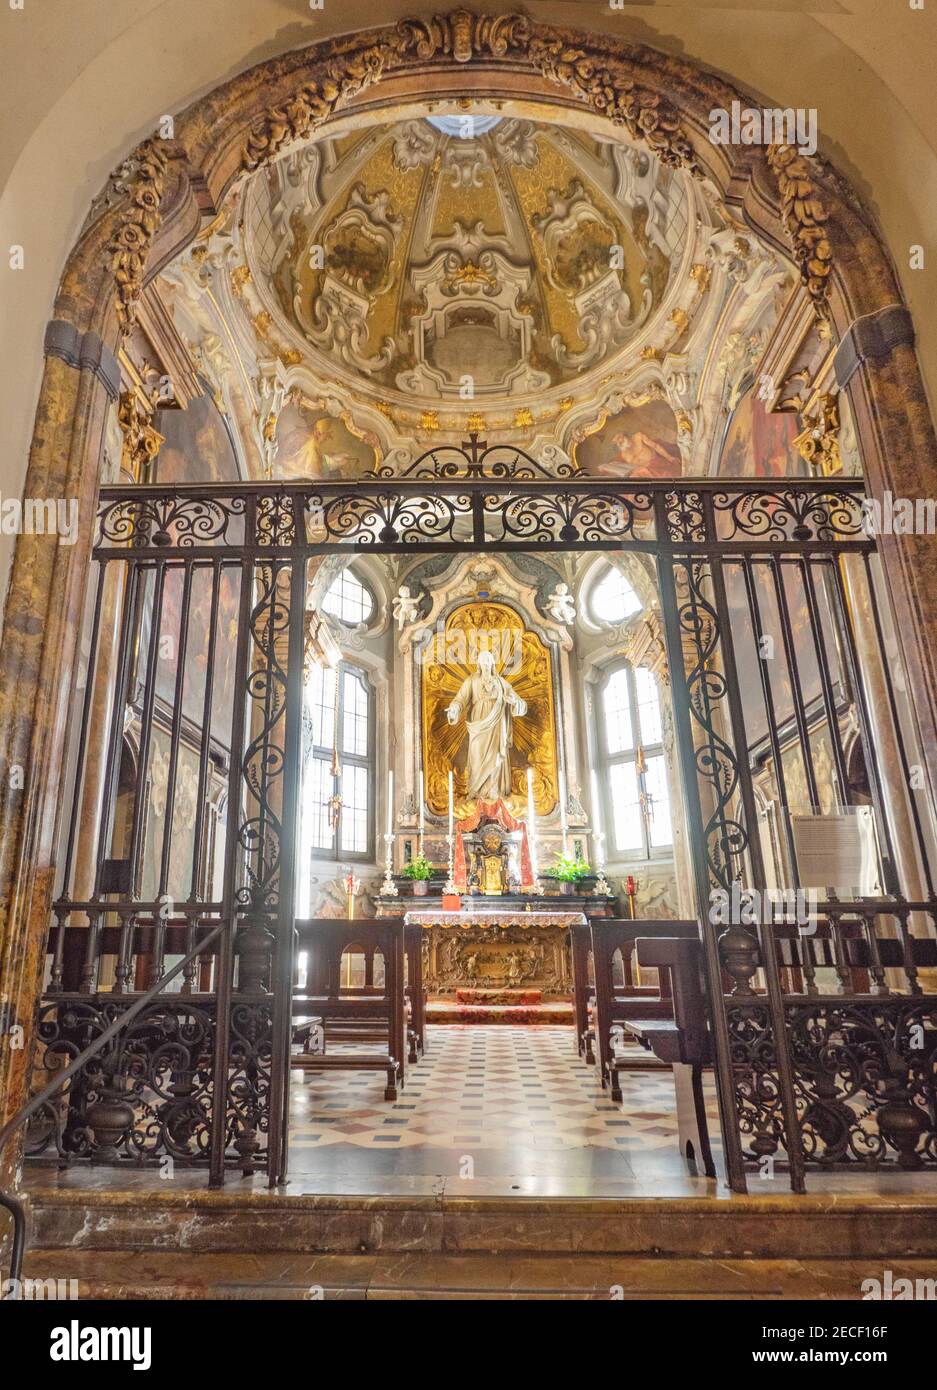 Cappella del Sacro cuore eretta in stile barocco alla fine del 17 ° secolo. Sant'Ambrogio, Milano, Lombardia, Italia. Foto Stock